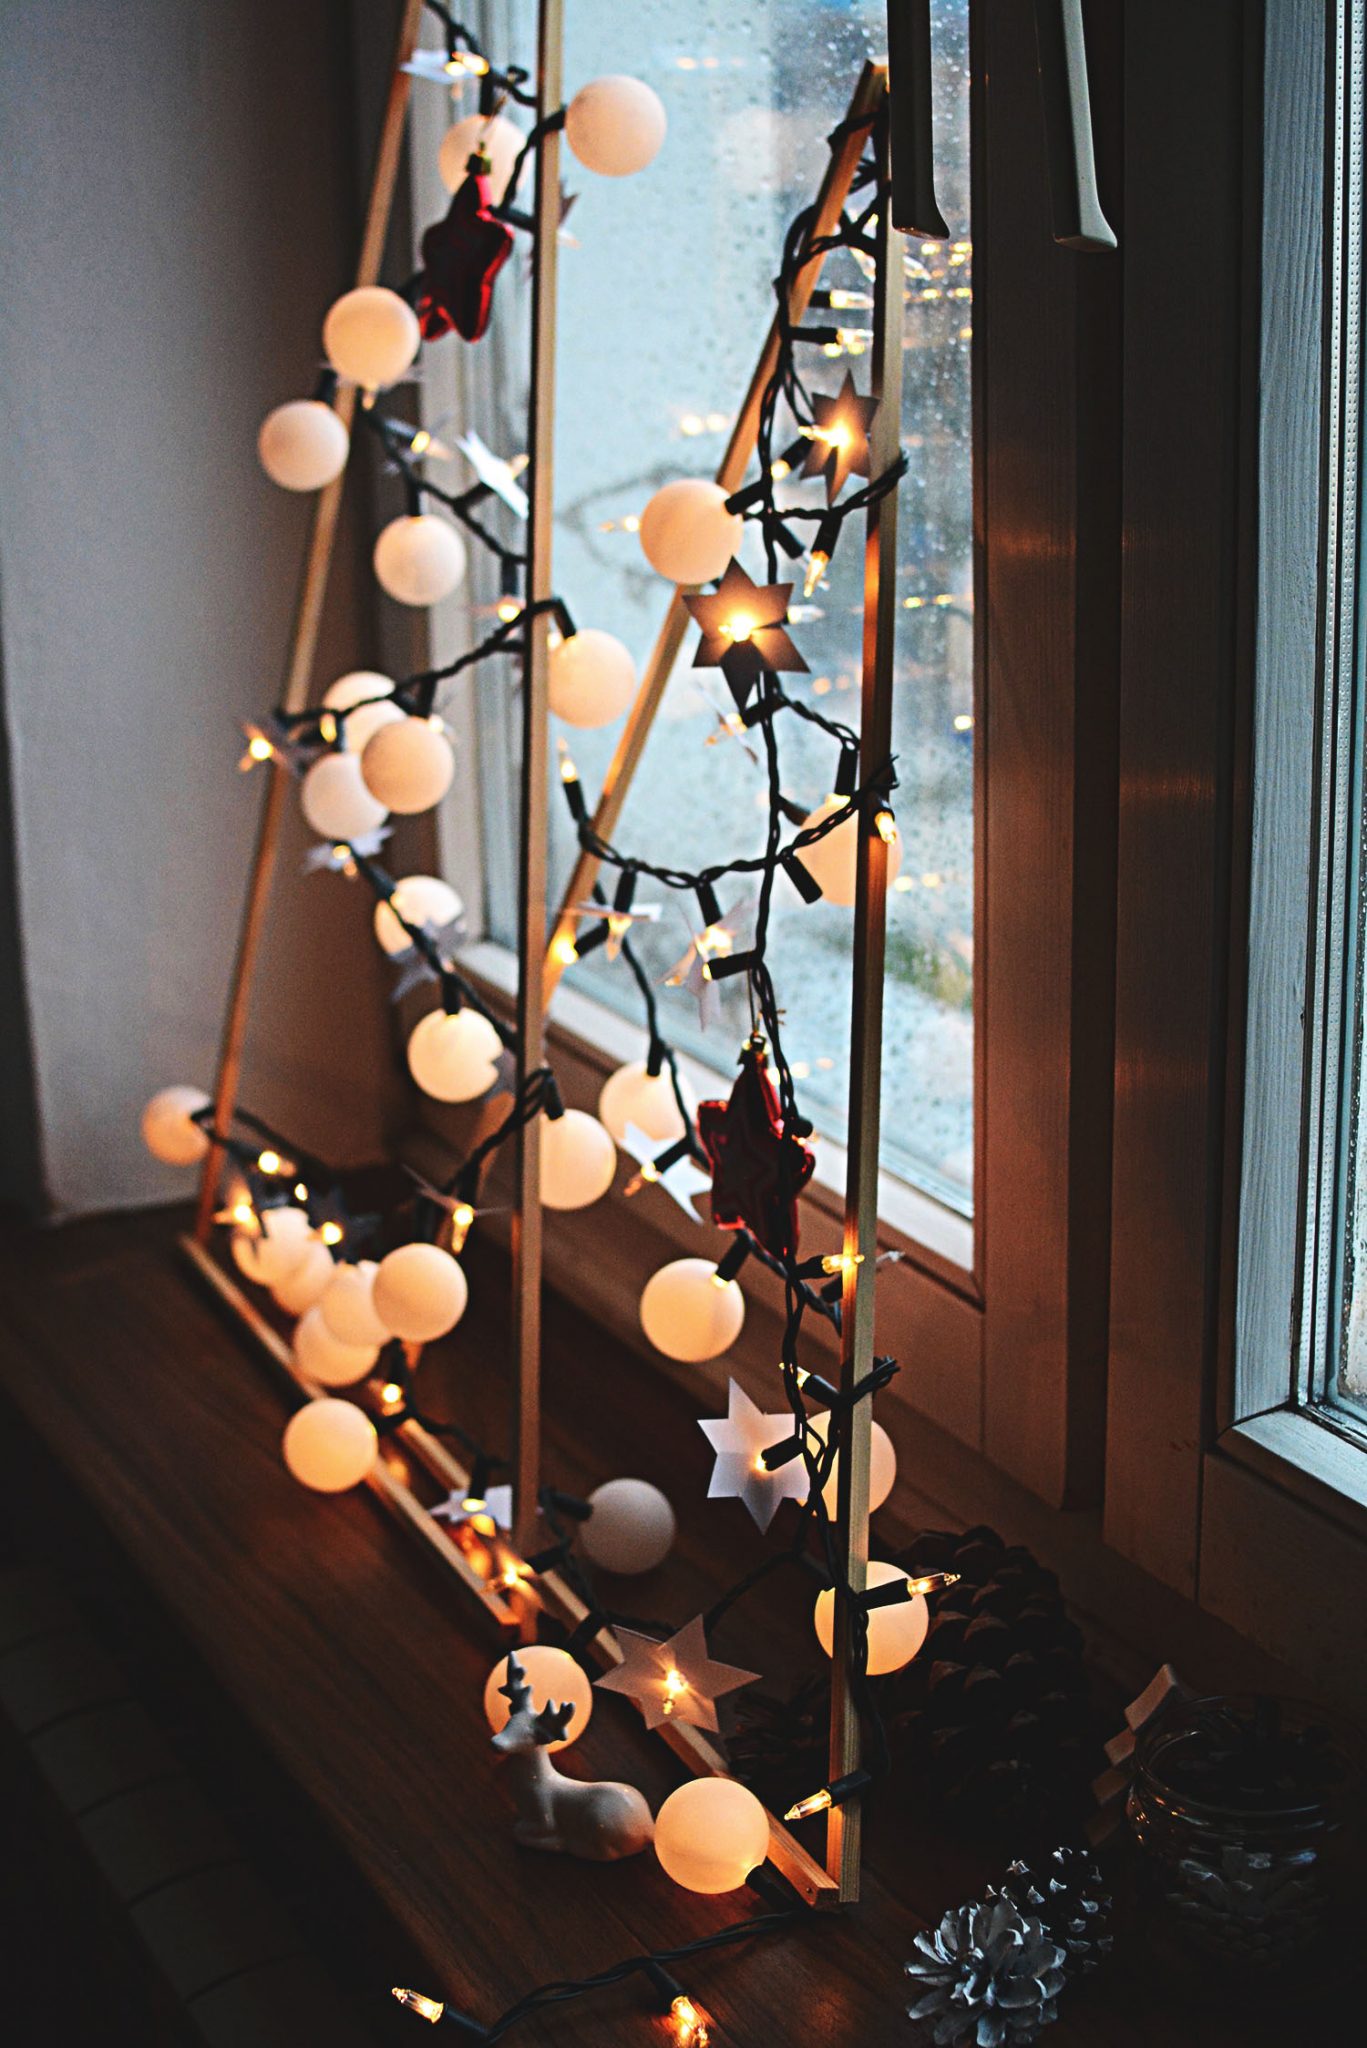 pomysly-na-dekoracje-swiateczne-z-lampkami-choinkowymi